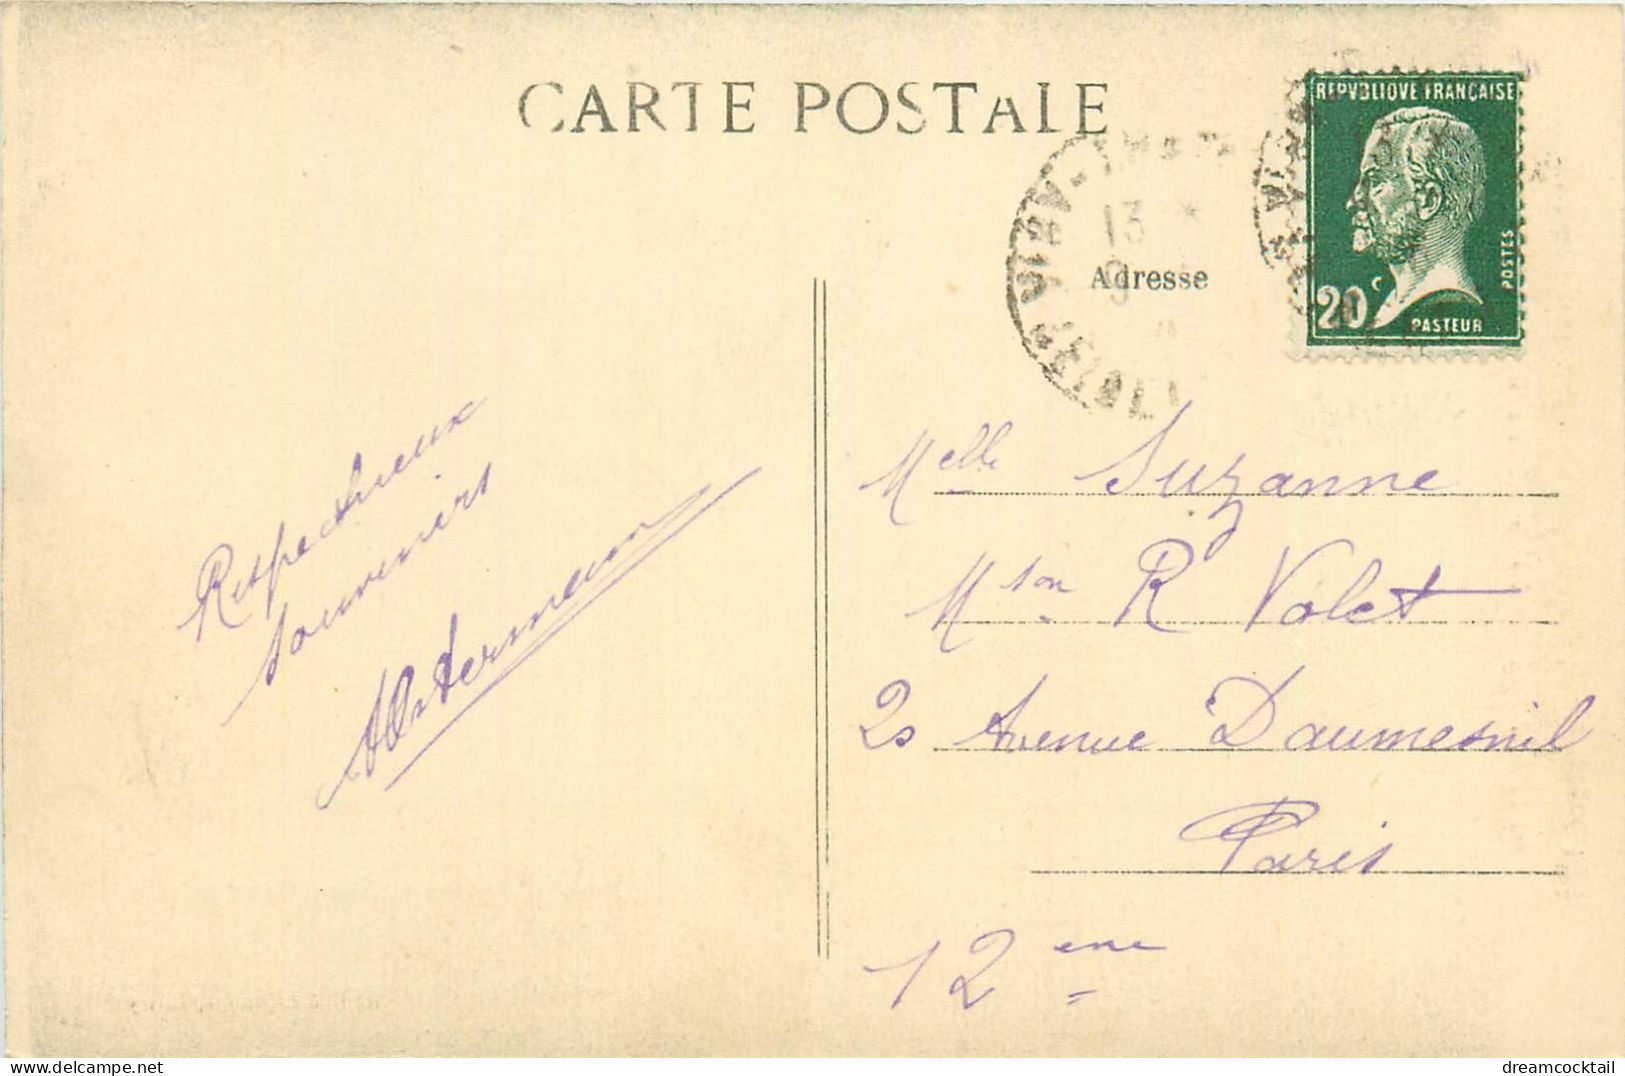 (S) Superbe LOT n°12 de 50 cartes postales anciennes sur toute la France